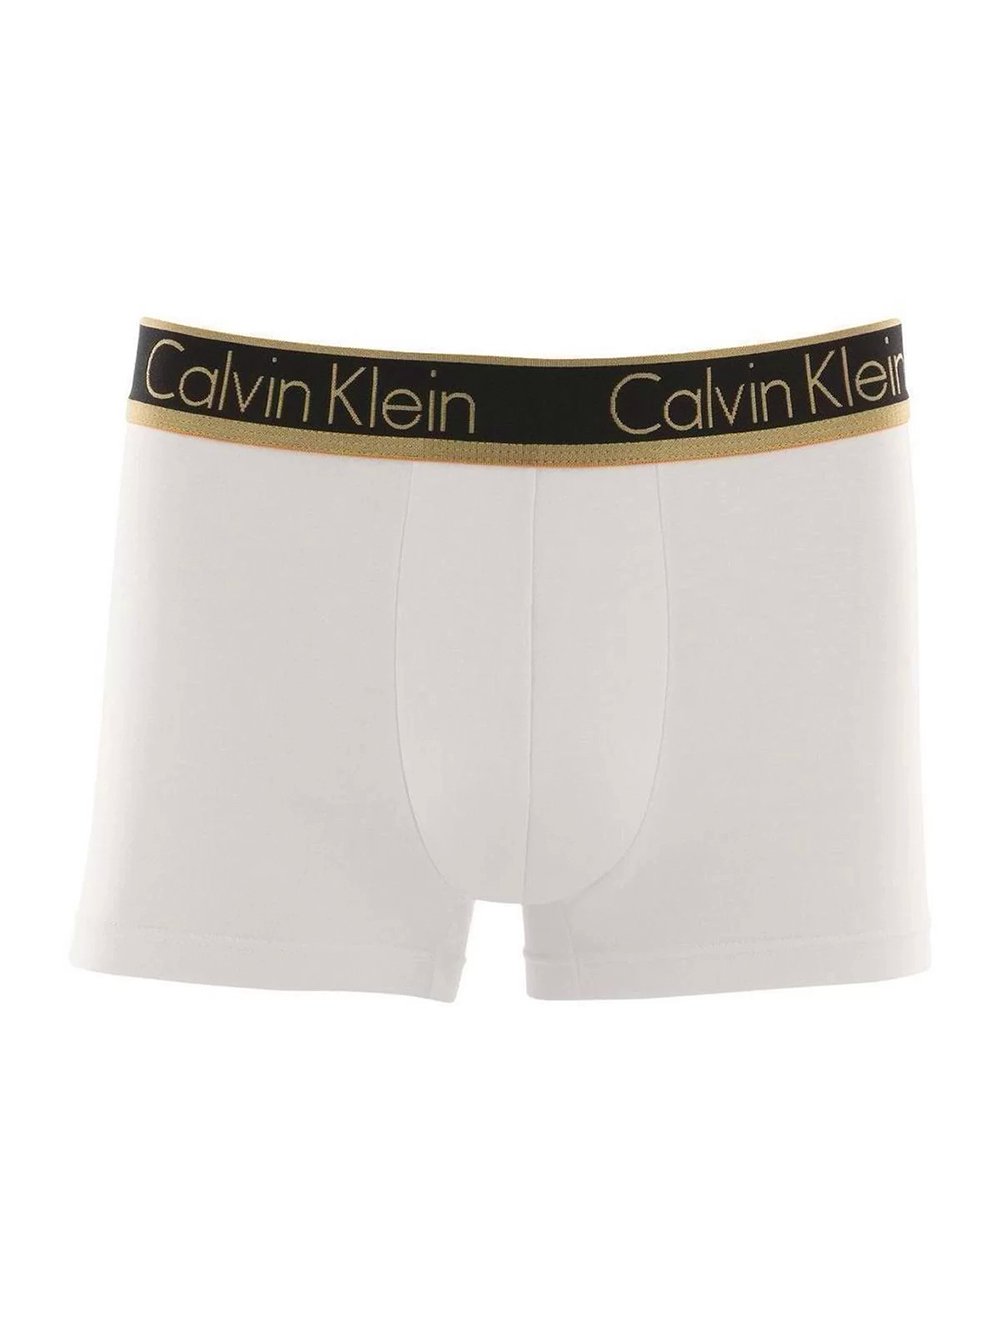 Cueca Calvin Klein Trunk Modal Dourado Branca C10.03 BR03 1UN